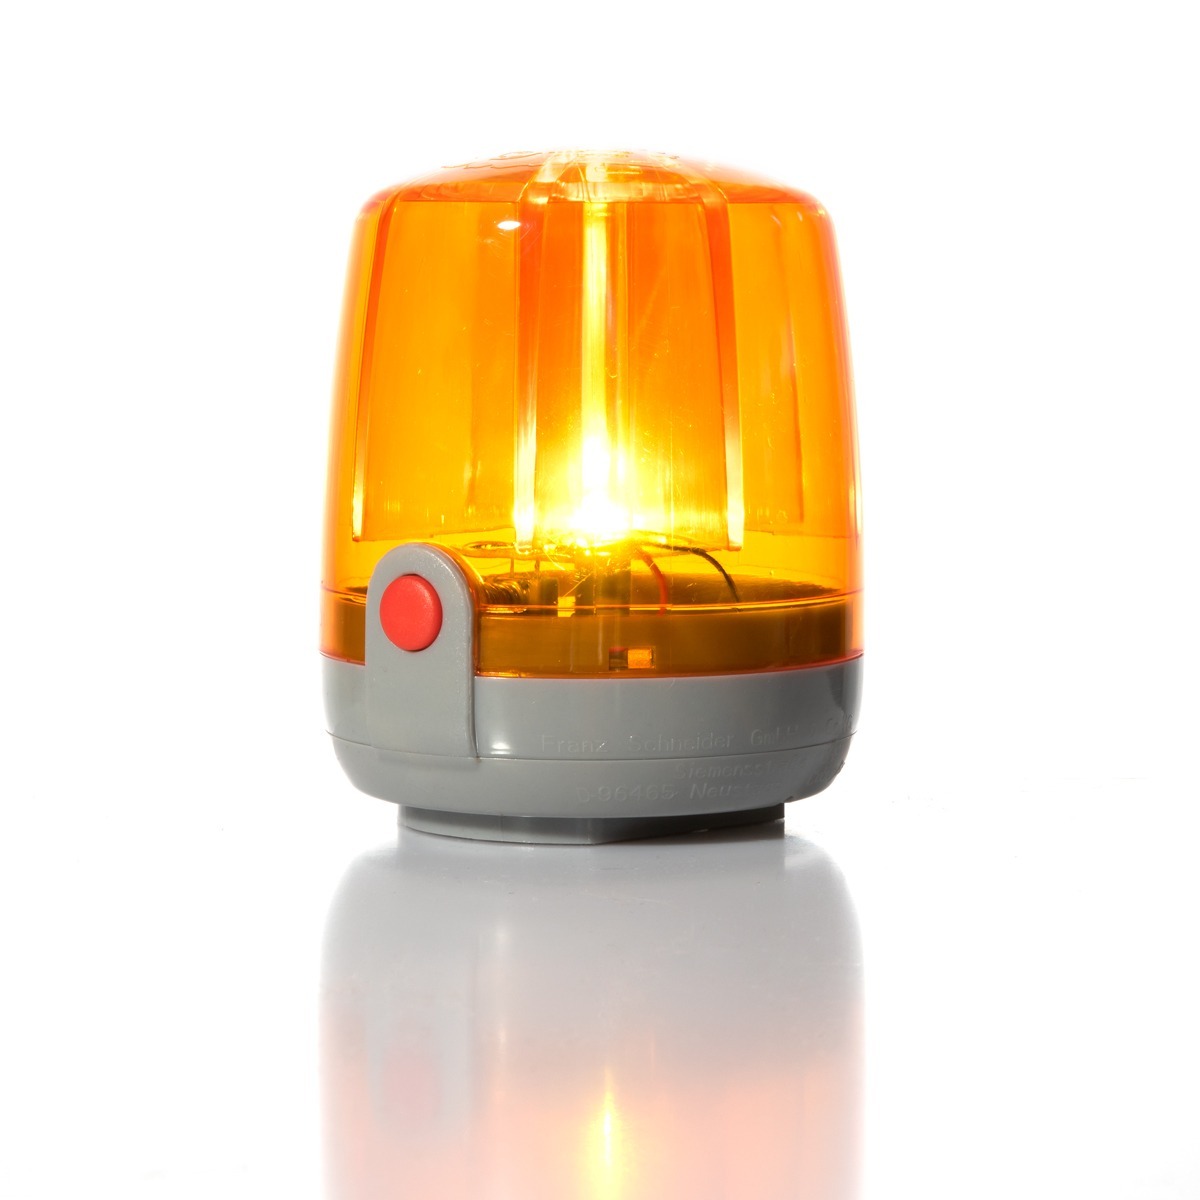 Rolly Toys lampa kogut pomarańczowa rollyAccessories